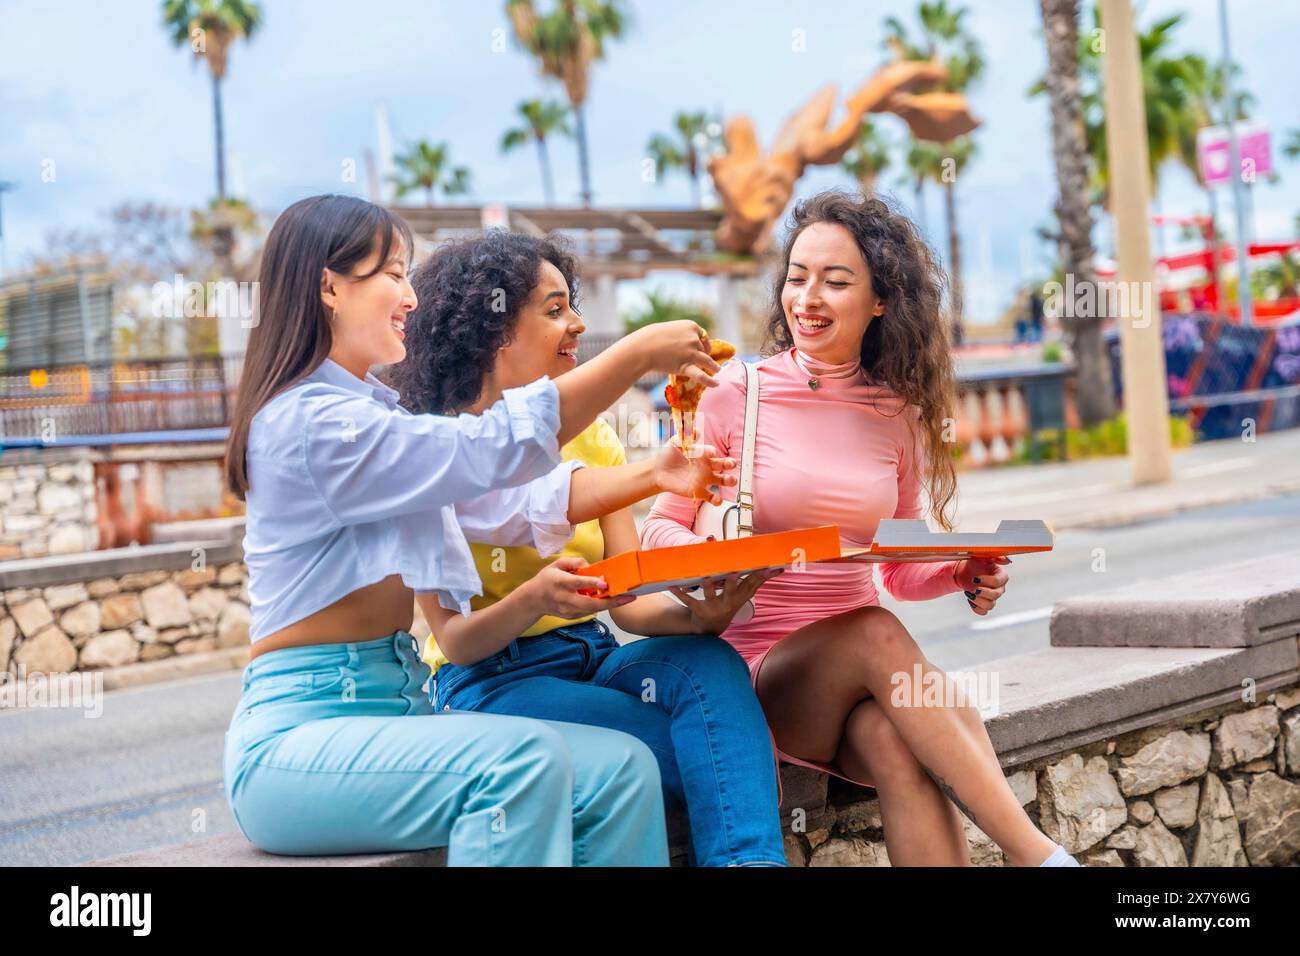 Tre amiche multietniche che mangiano pizza sedute in una panchina della città Foto Stock